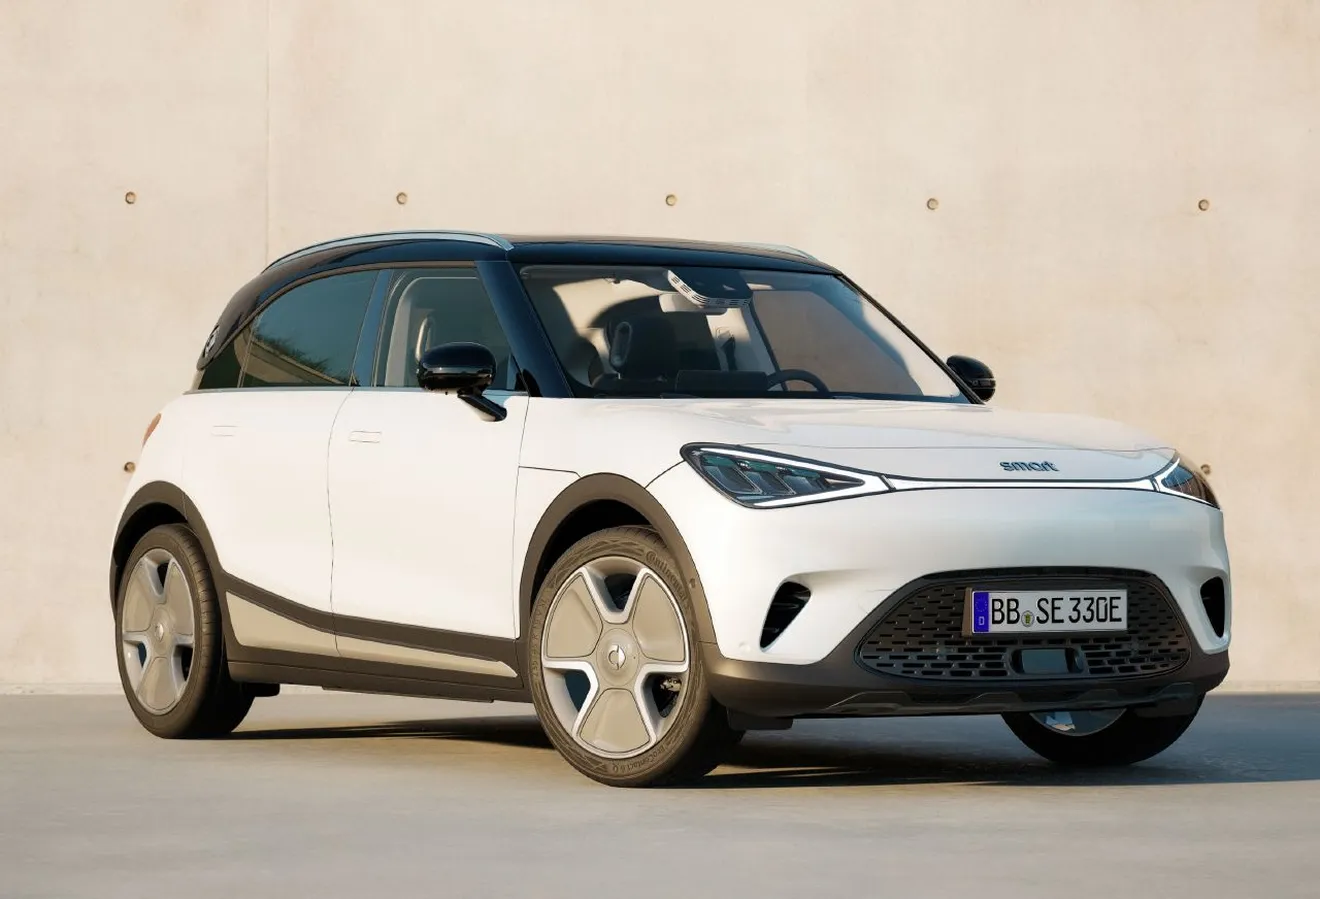 ¿Pensando en el smart #1? El pequeño SUV eléctrico anuncia una versión más básica 5.000 euros más barata con 300 km de autonomía